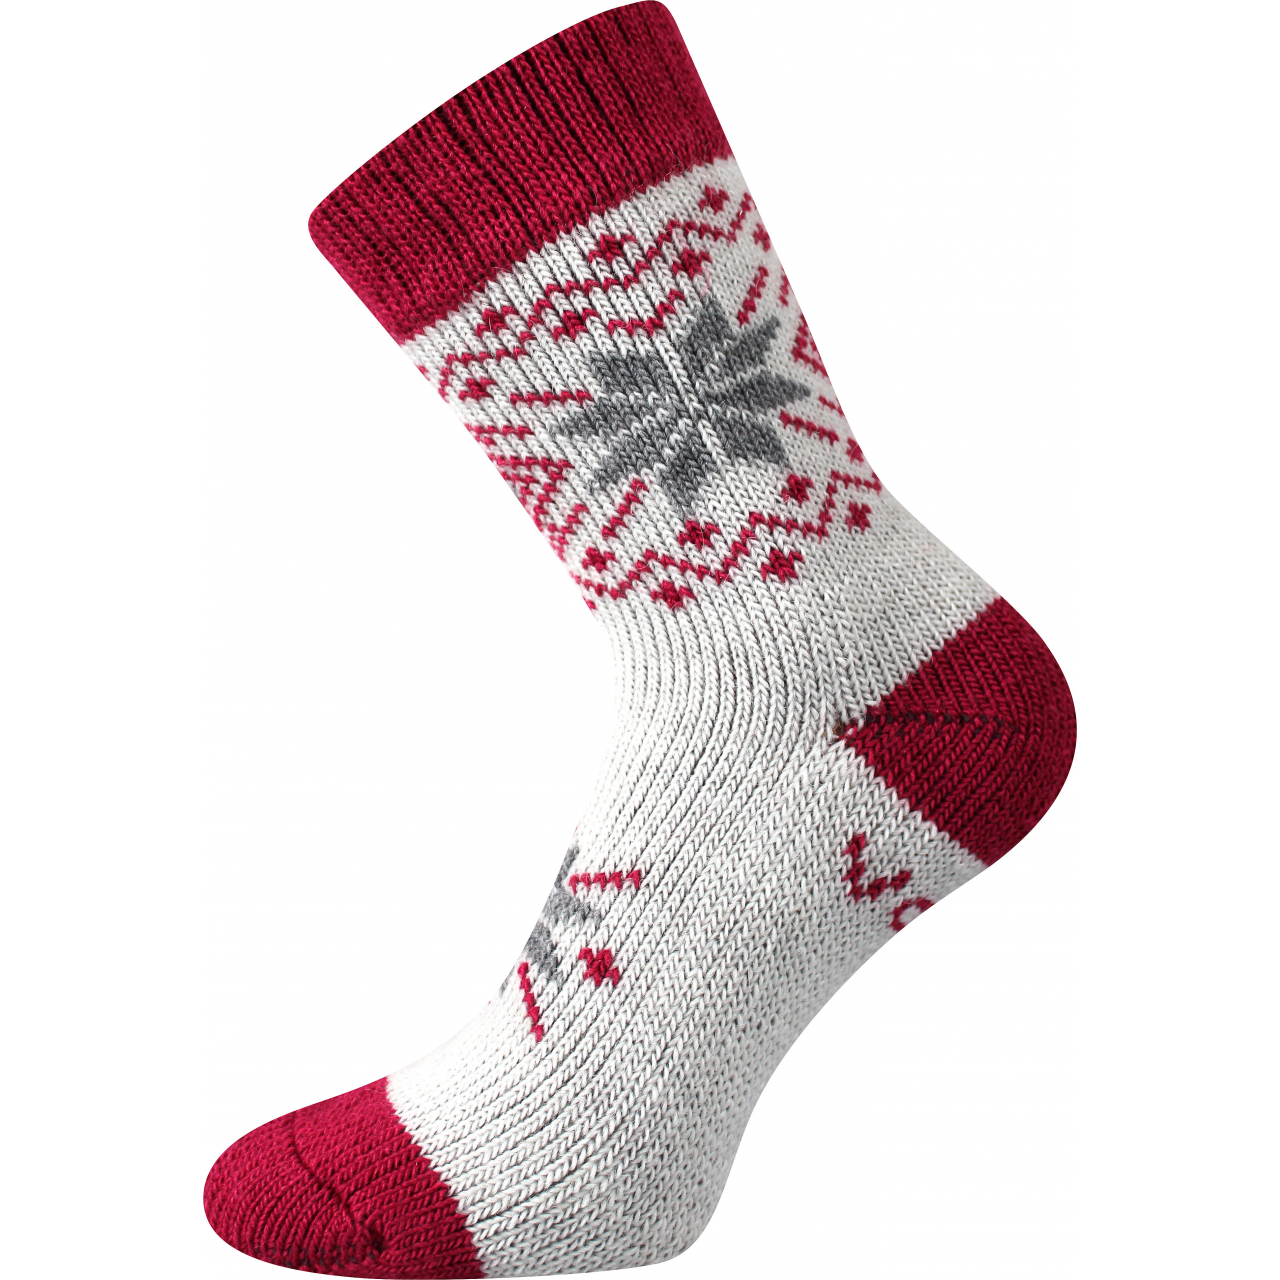 Ponožky unisex vlněné Voxx Alta - bílé-červené, 35-38